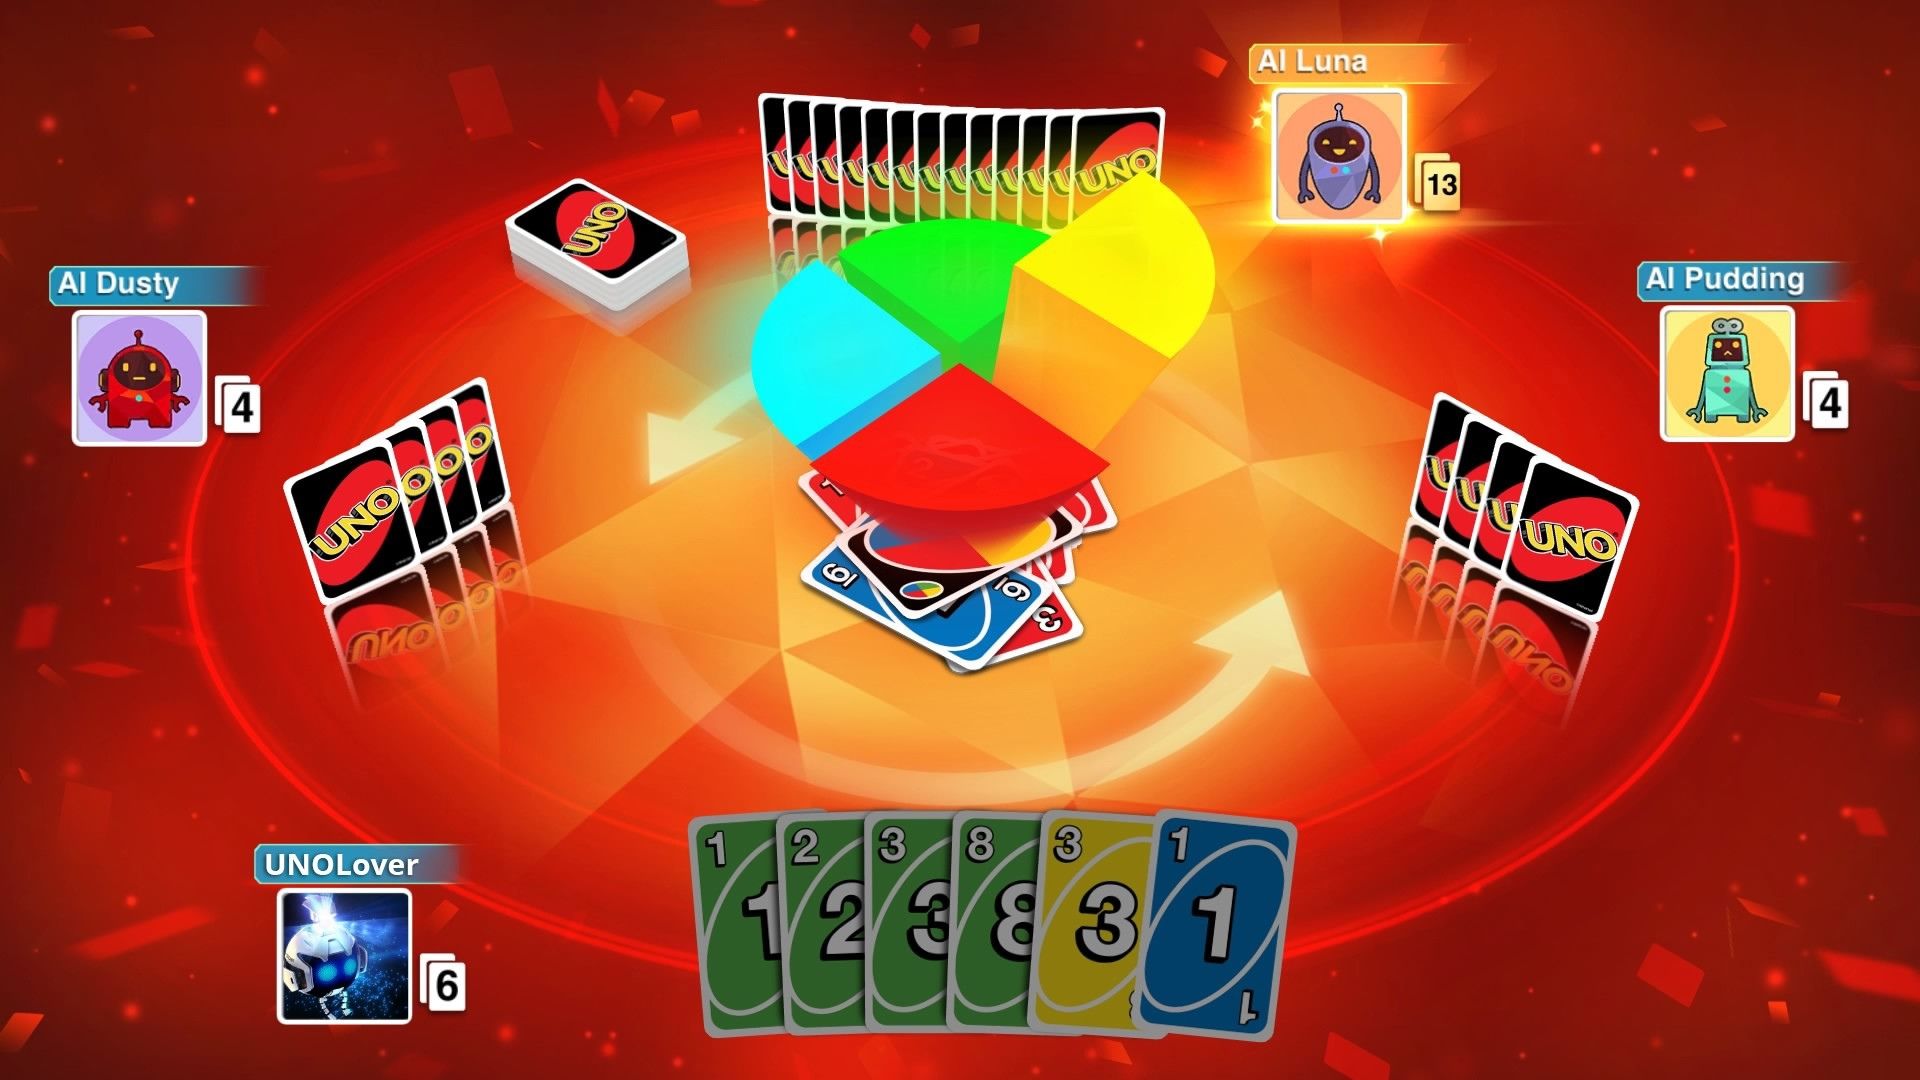 En skärmdump från UNO, ett sällskapsspel, som visar en cirkel med fyra kvadranter skurna i mitten, en blå, en grön, en röd, en gul och fyra rader med upprättstående kort i en cirkel runt dem, med spelarkorten pekande mot publiken.